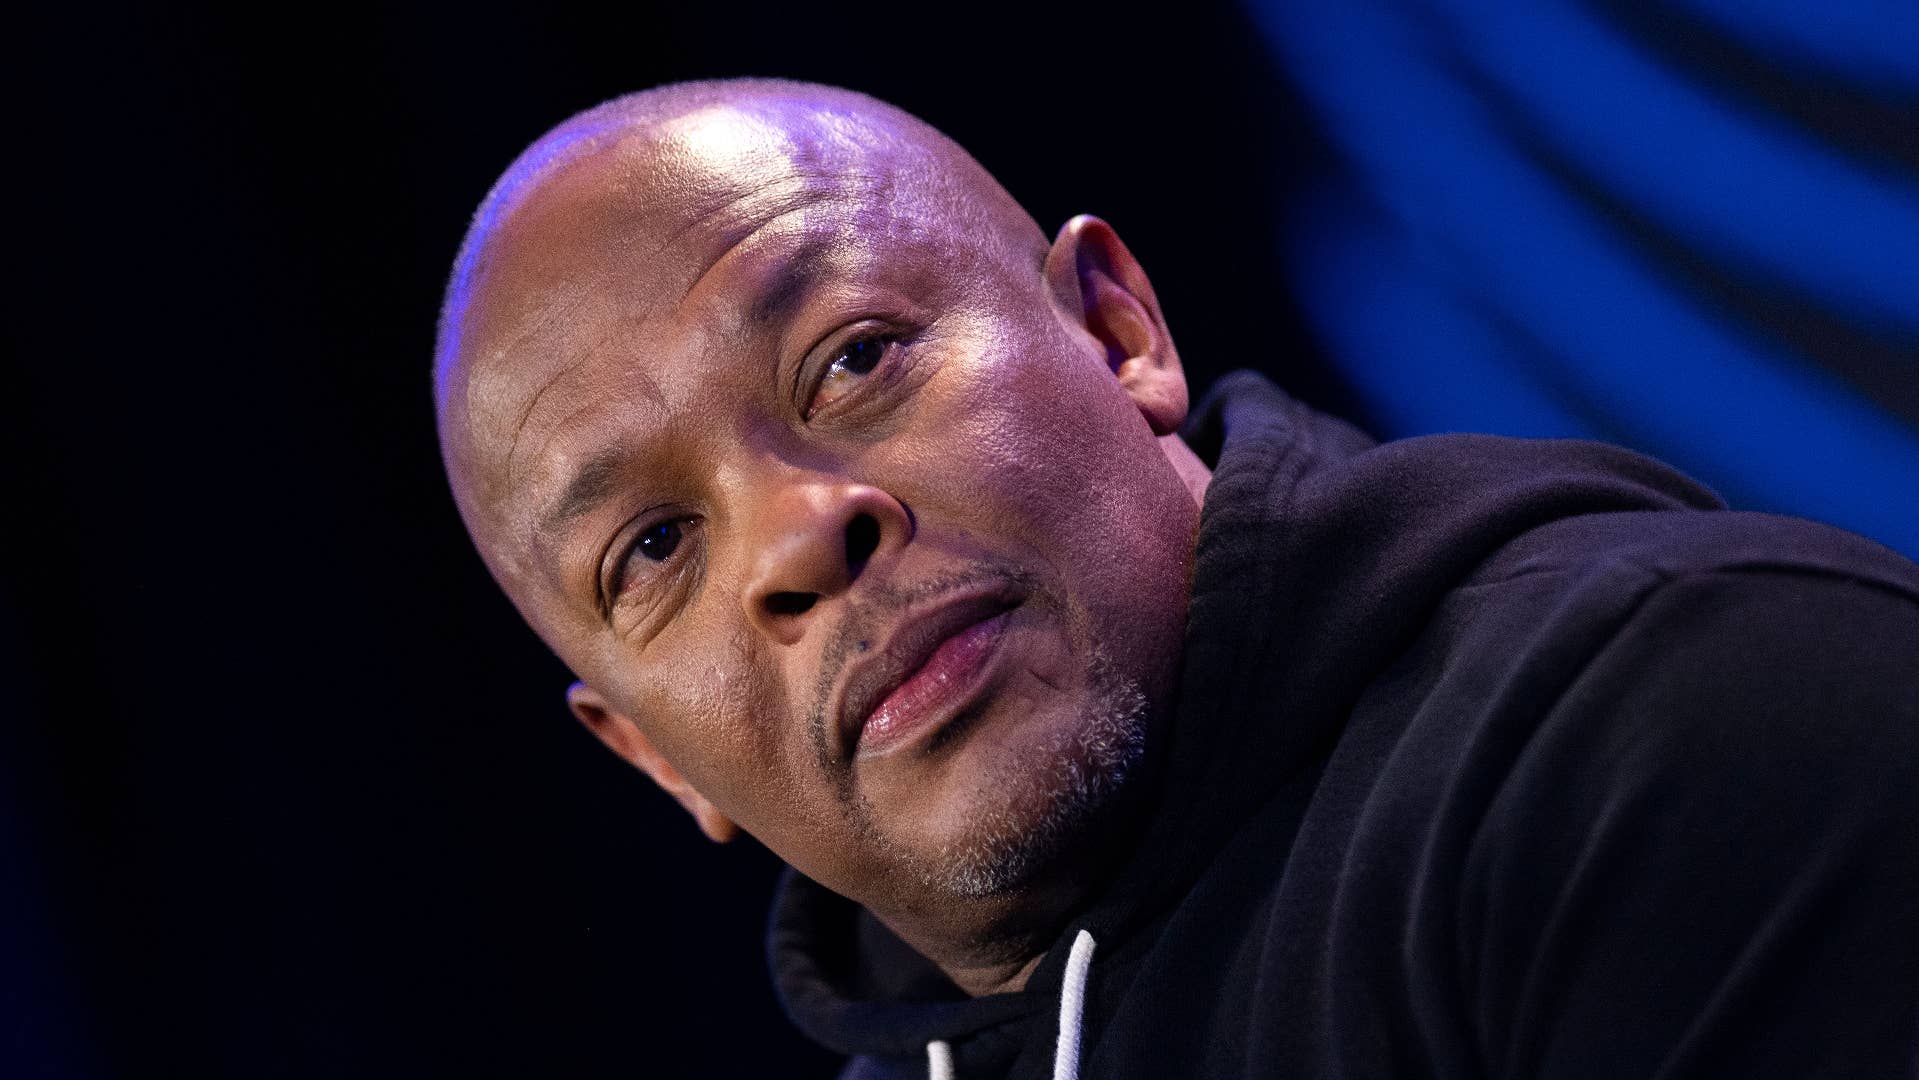 Dr. Dre attends Super Bowl LVI Halftime Show Press Conference.